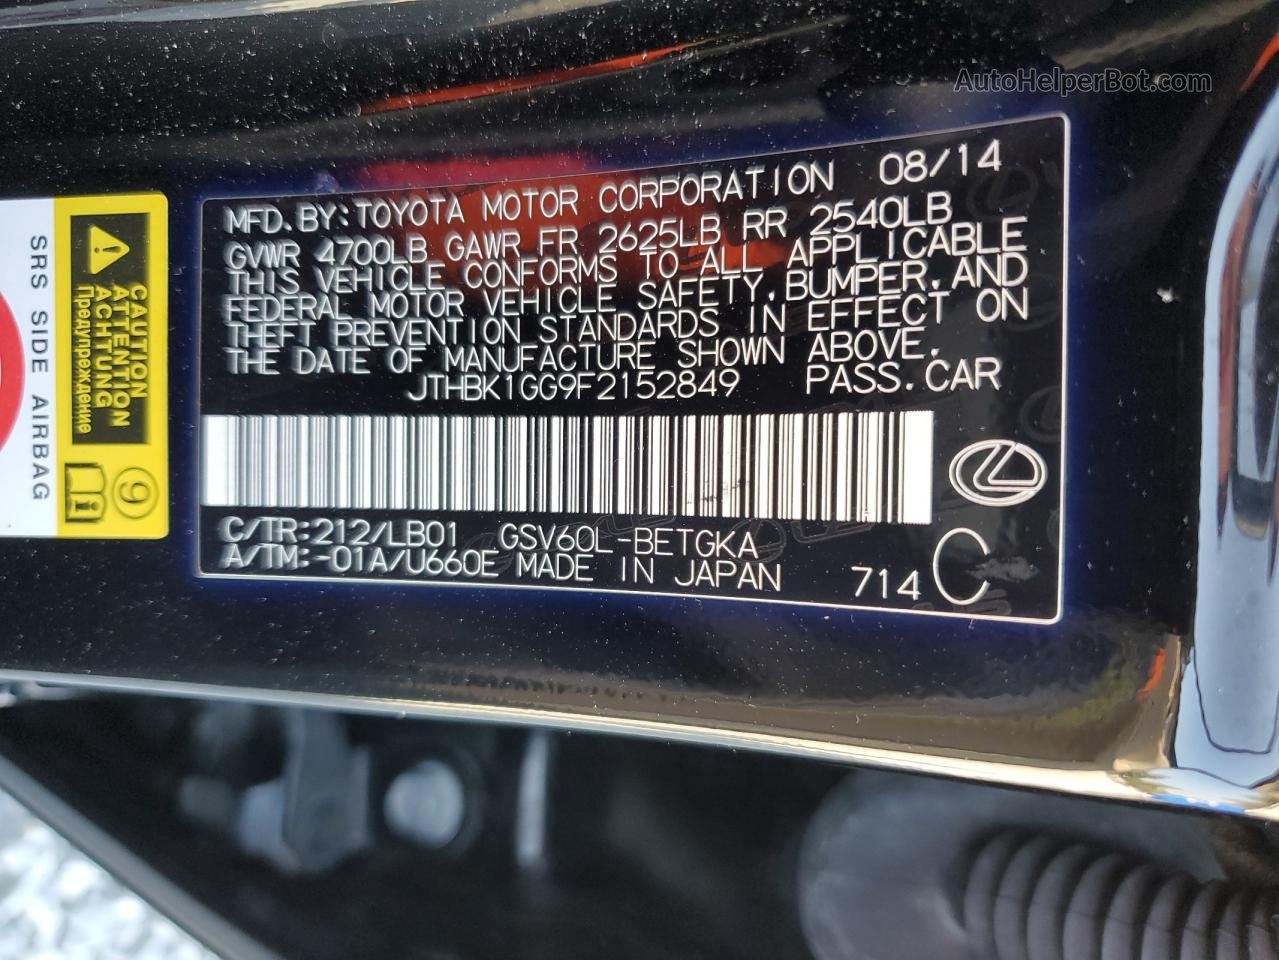 2015 Lexus Es 350 Black vin: JTHBK1GG9F2152849